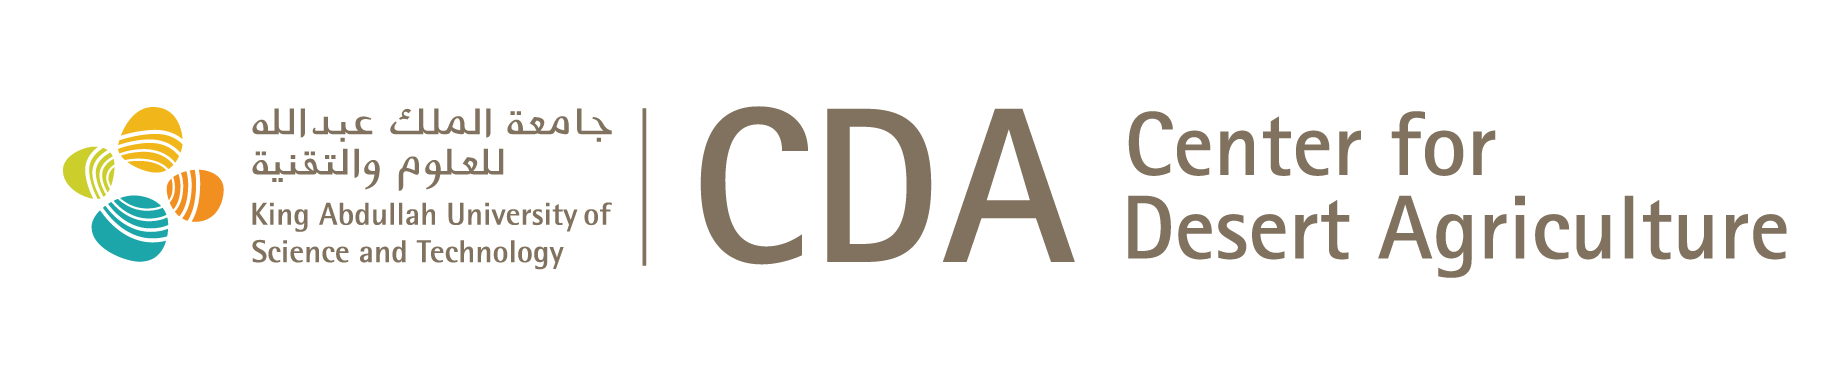 cda-logo-black